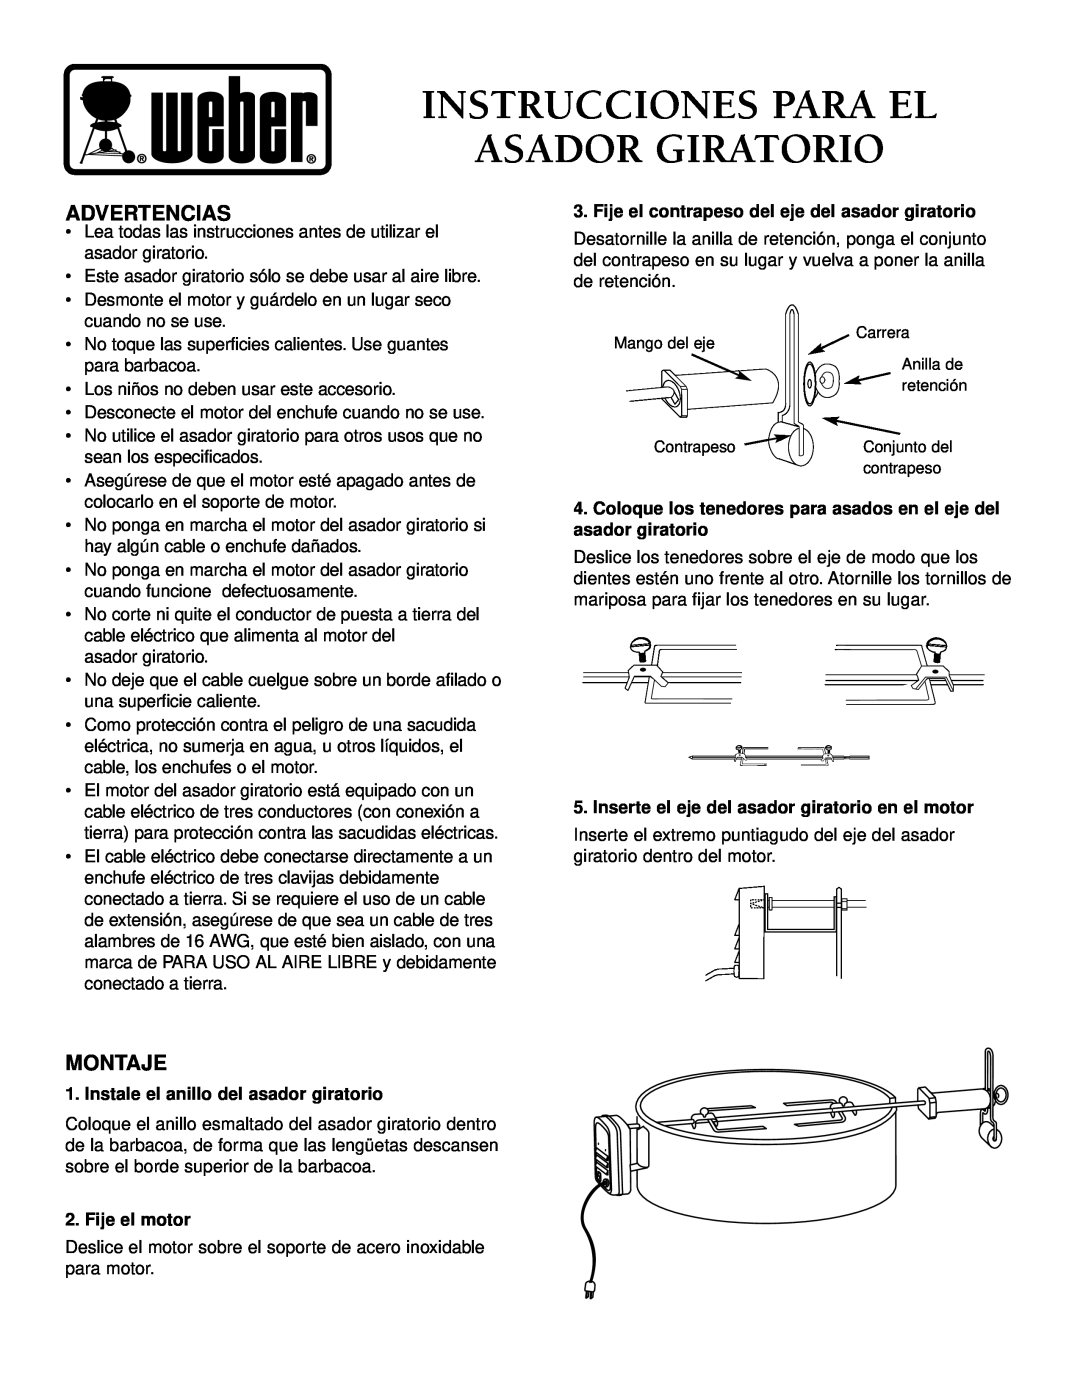 Weber 96811 manual Instrucciones Para El Asador Giratorio, Advertencias, Montaje, Instale el anillo del asador giratorio 